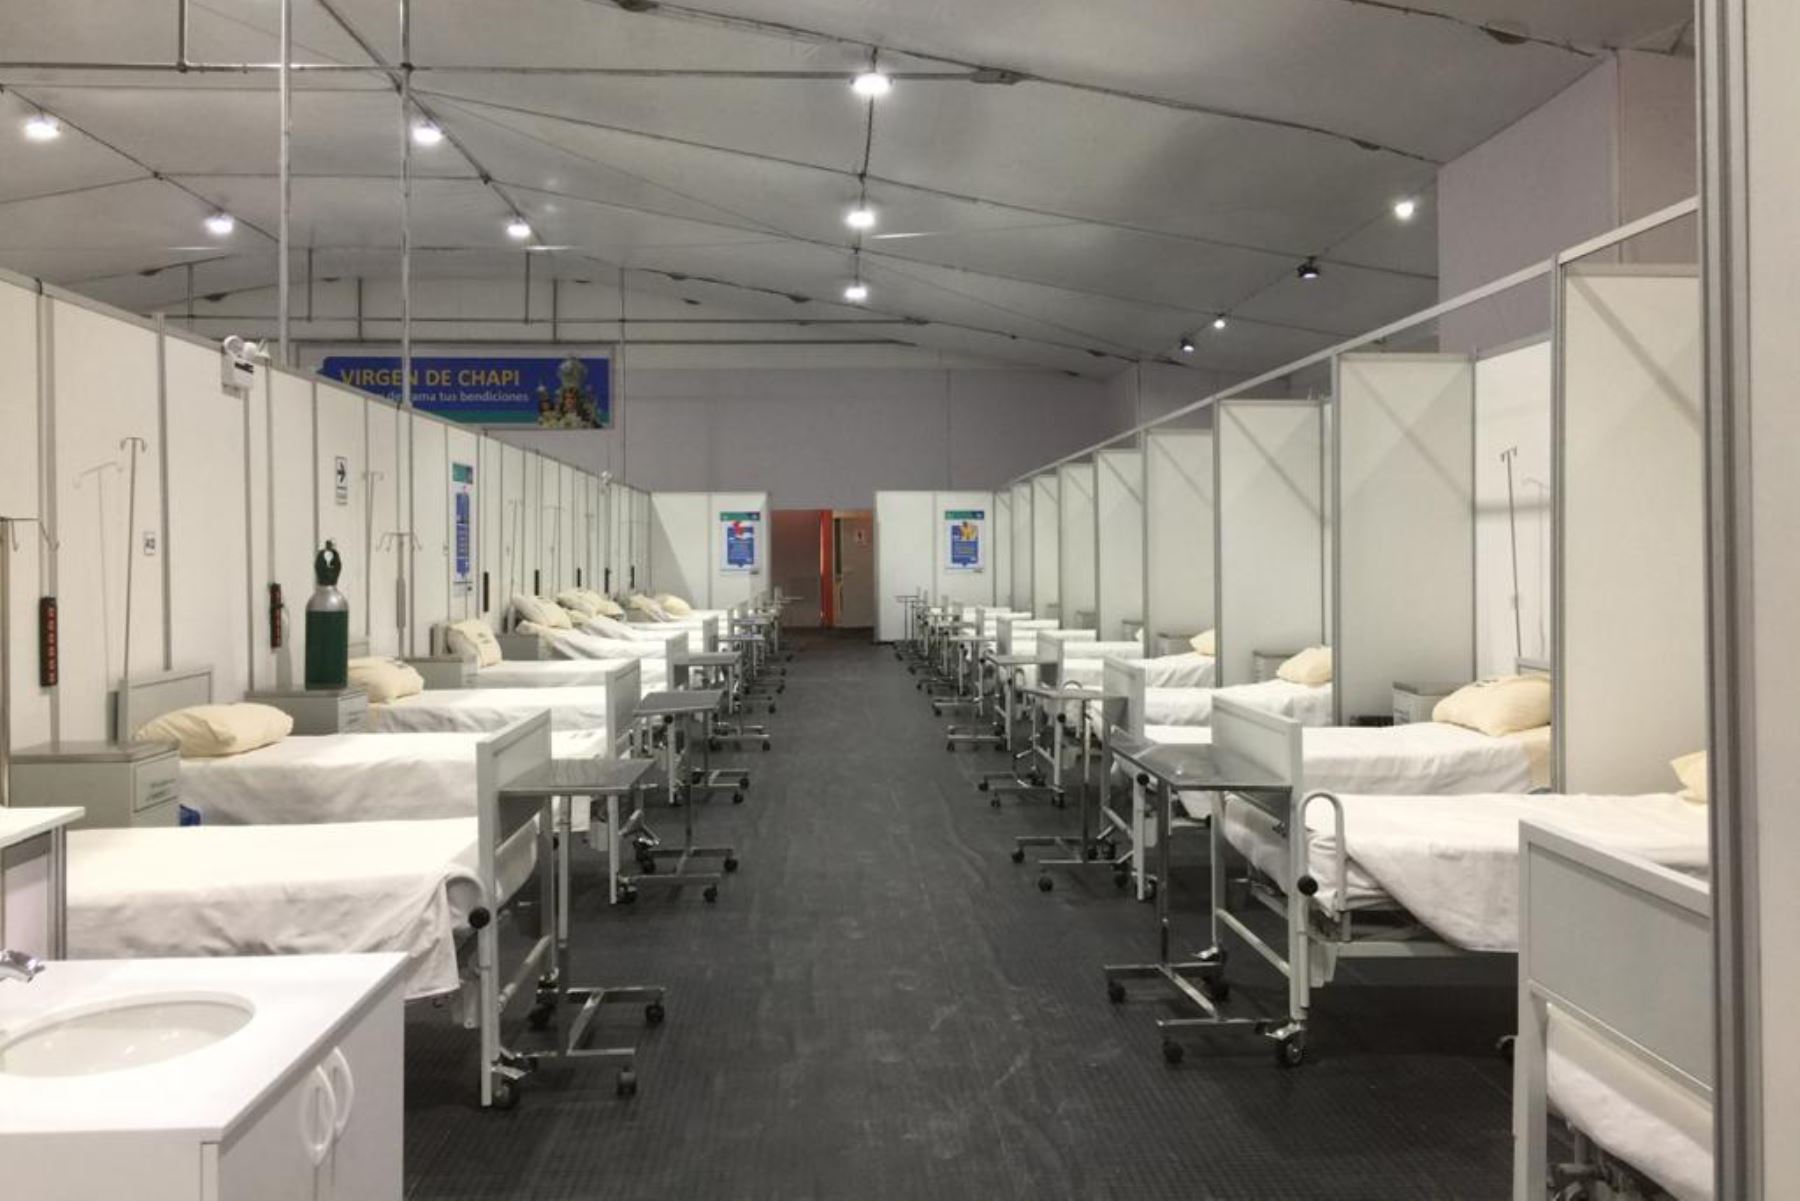 El hospital covid-19 cuenta con 535 camas, de las cuales 232 están ocupadas por pacientes en estado leve y moderado. Foto: ANDINA/Difusión